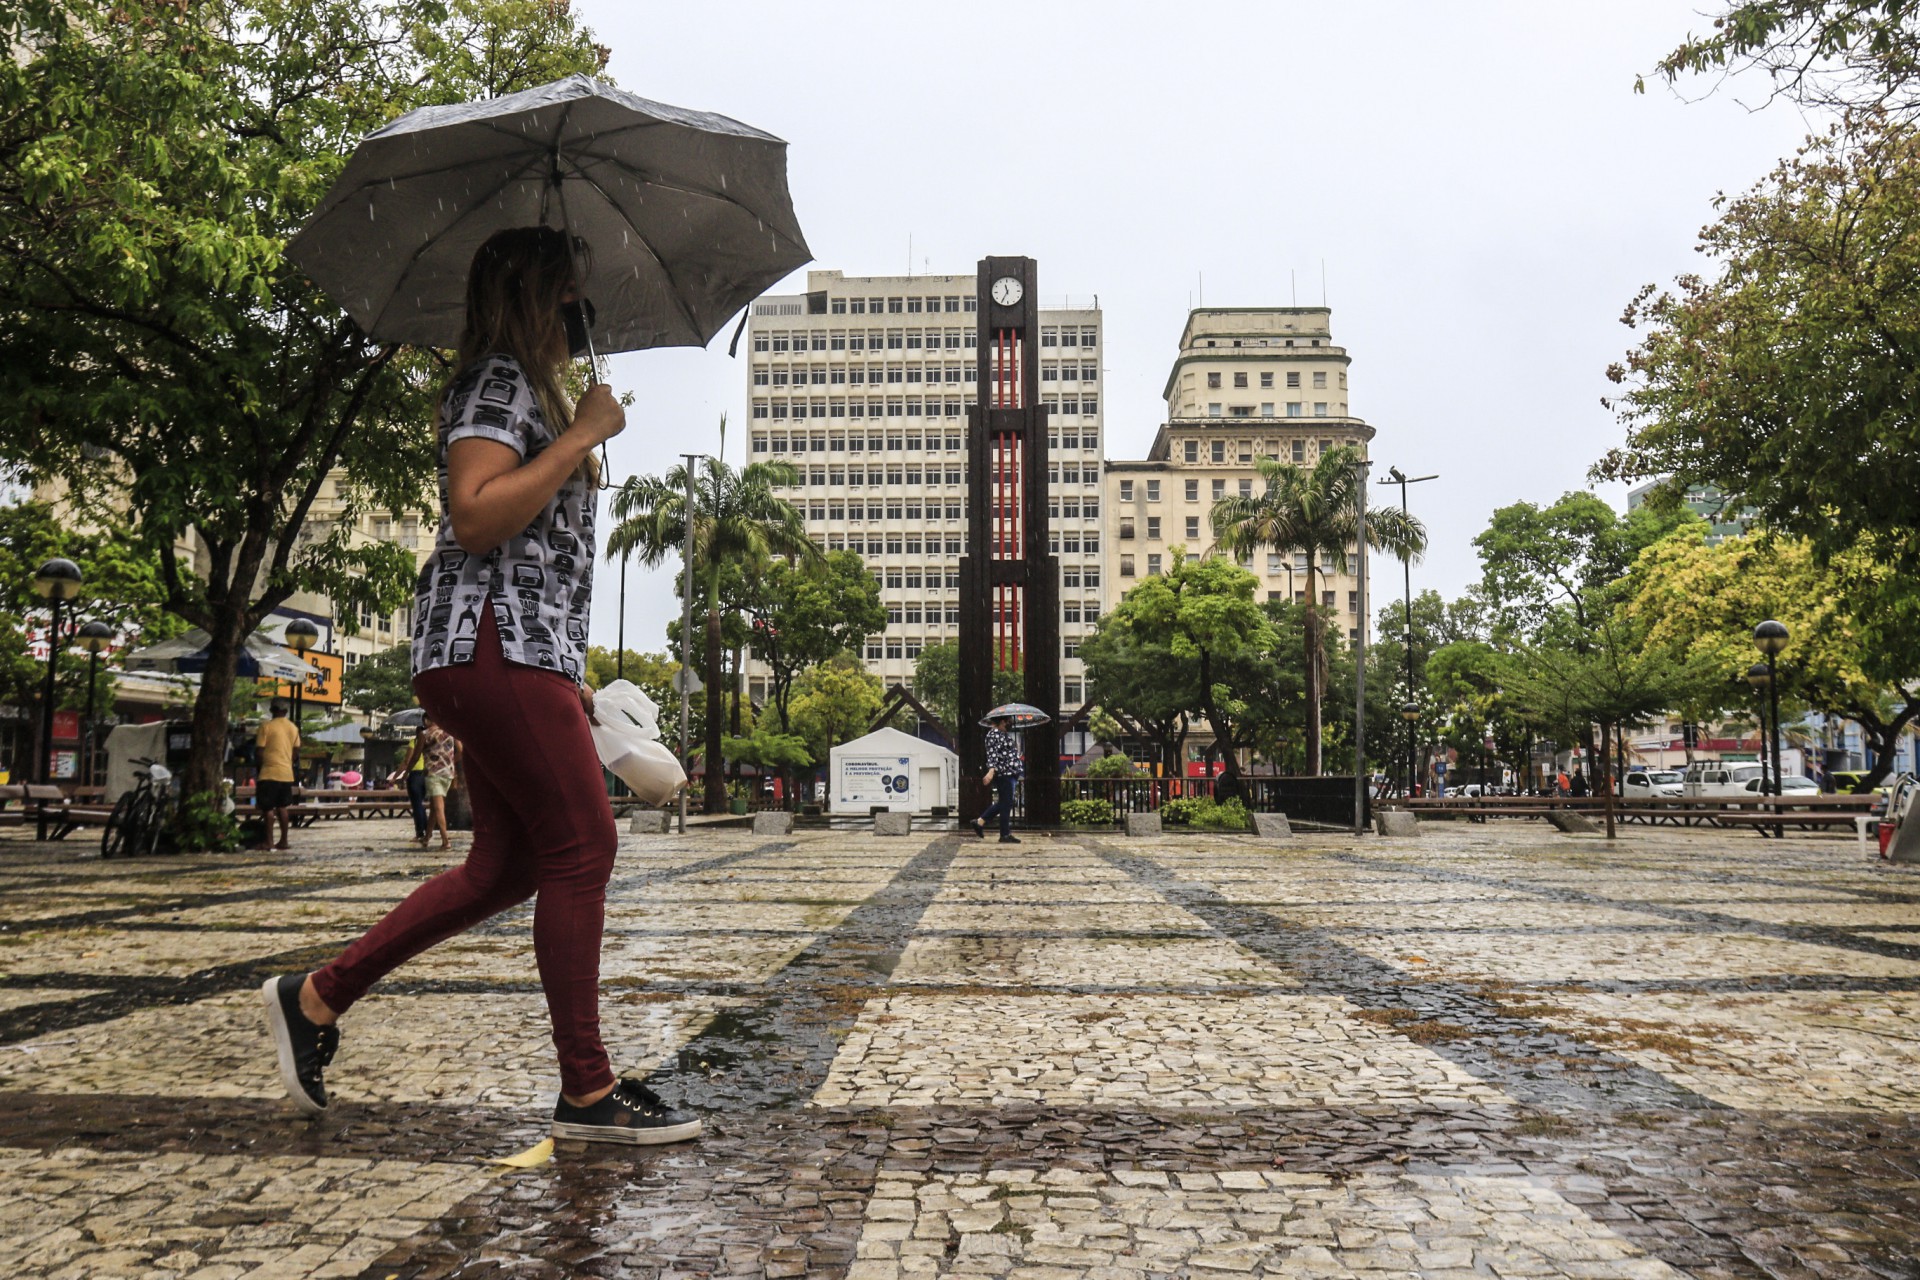 Movimentação na Praça do Ferreira em manhã de chuva intensa (Foto: Barbara Moira)